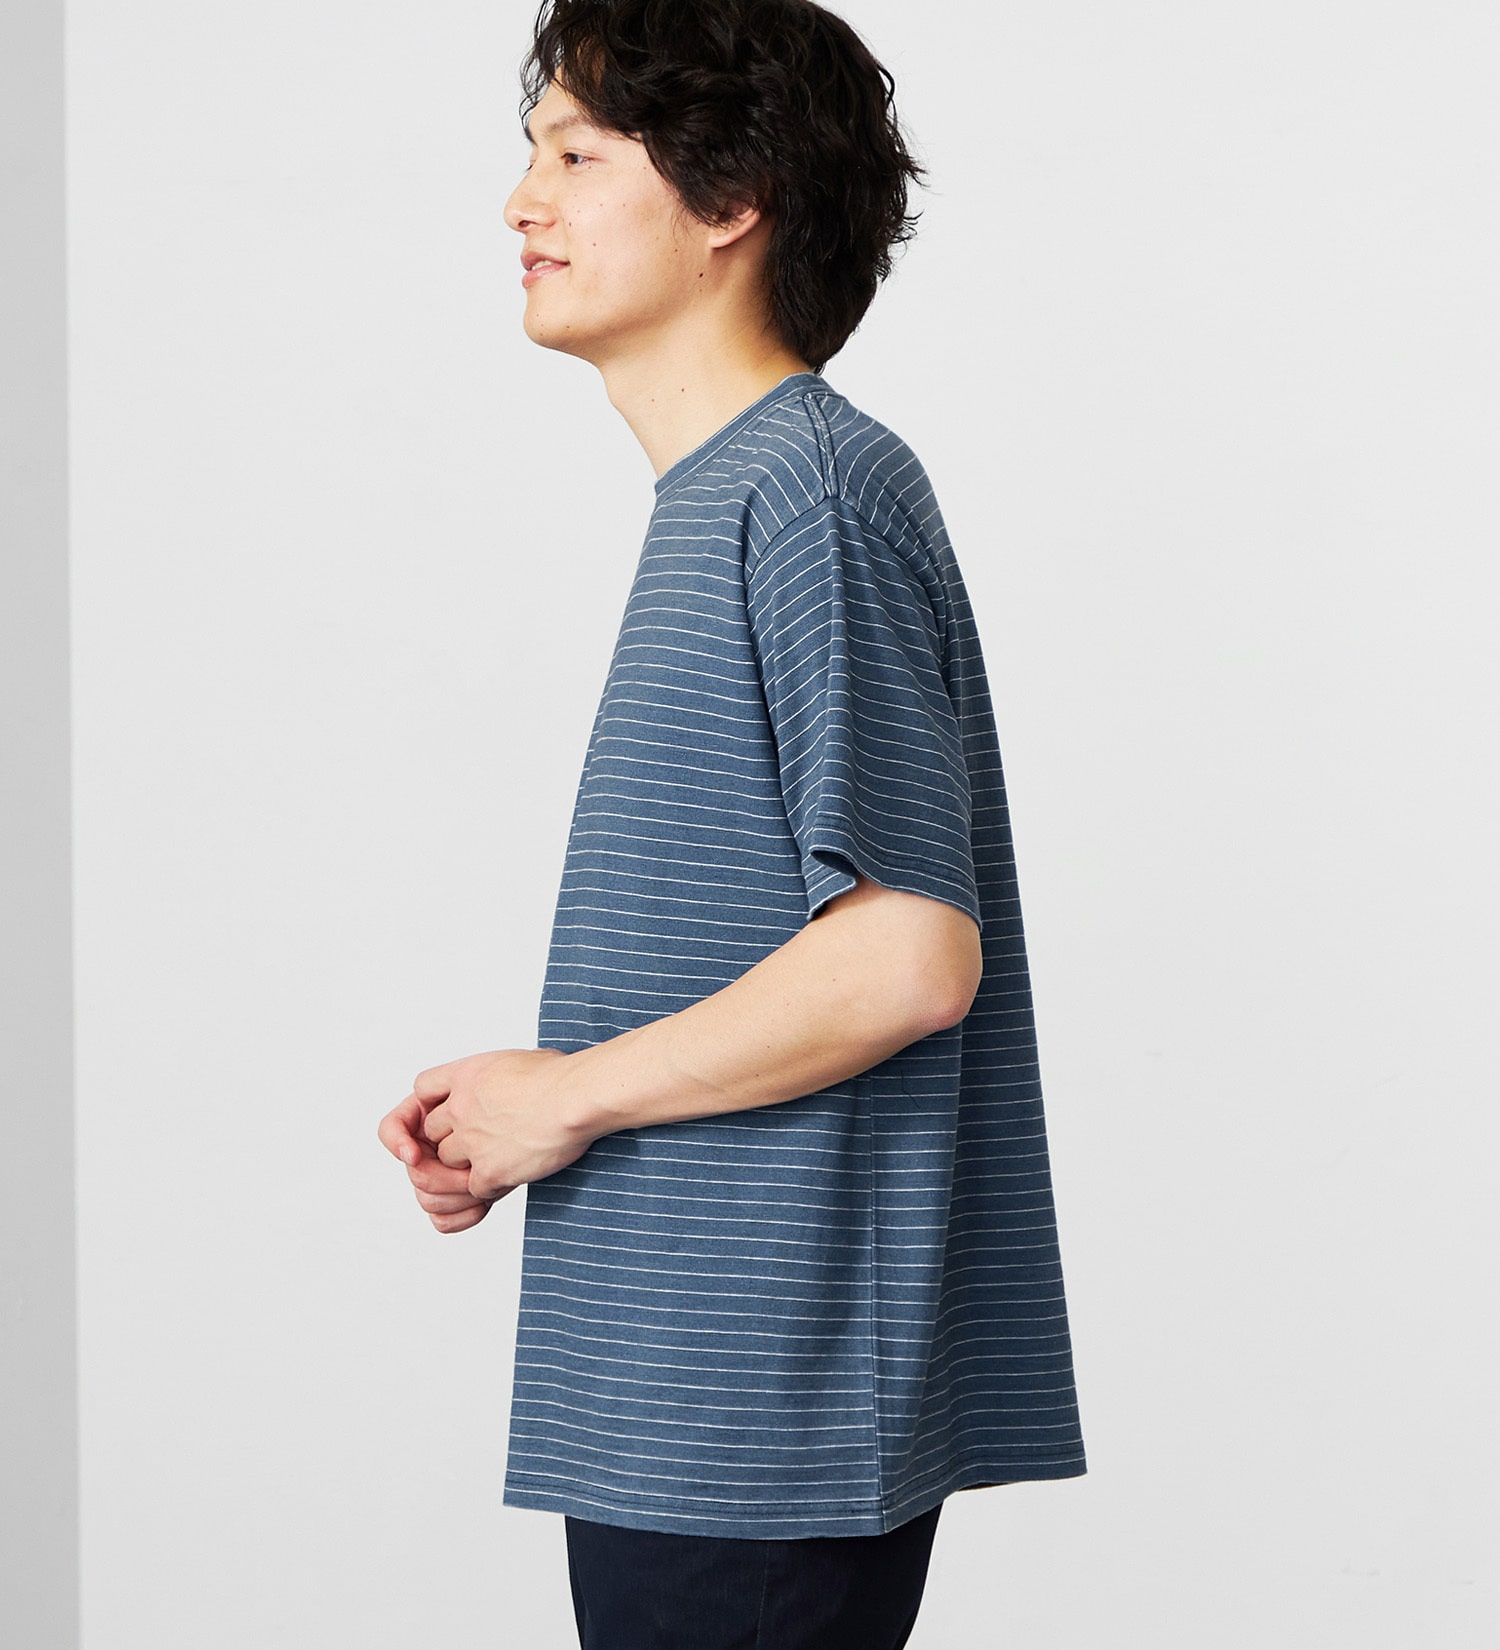 EDWIN(エドウイン)のインディゴボーダー半袖Tシャツ|トップス/Tシャツ/カットソー/メンズ|中色ブルー